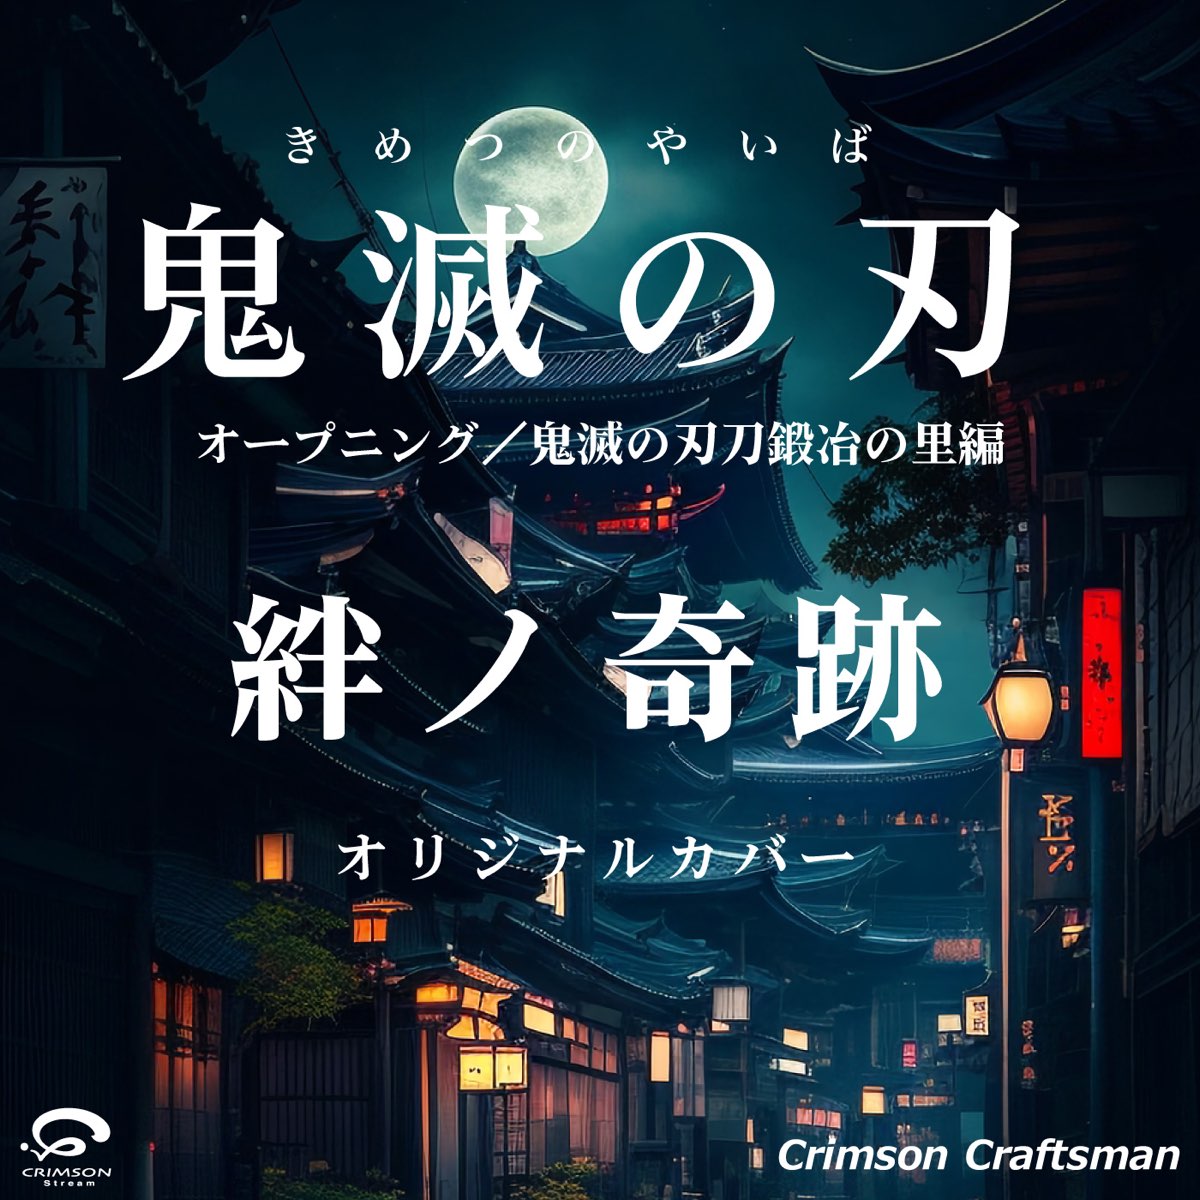 Listen to Kimetsu no Yaiba: Katanakaji no Sato-hen Opening Kizuna no  Kiseki on Apple Music & Spotify